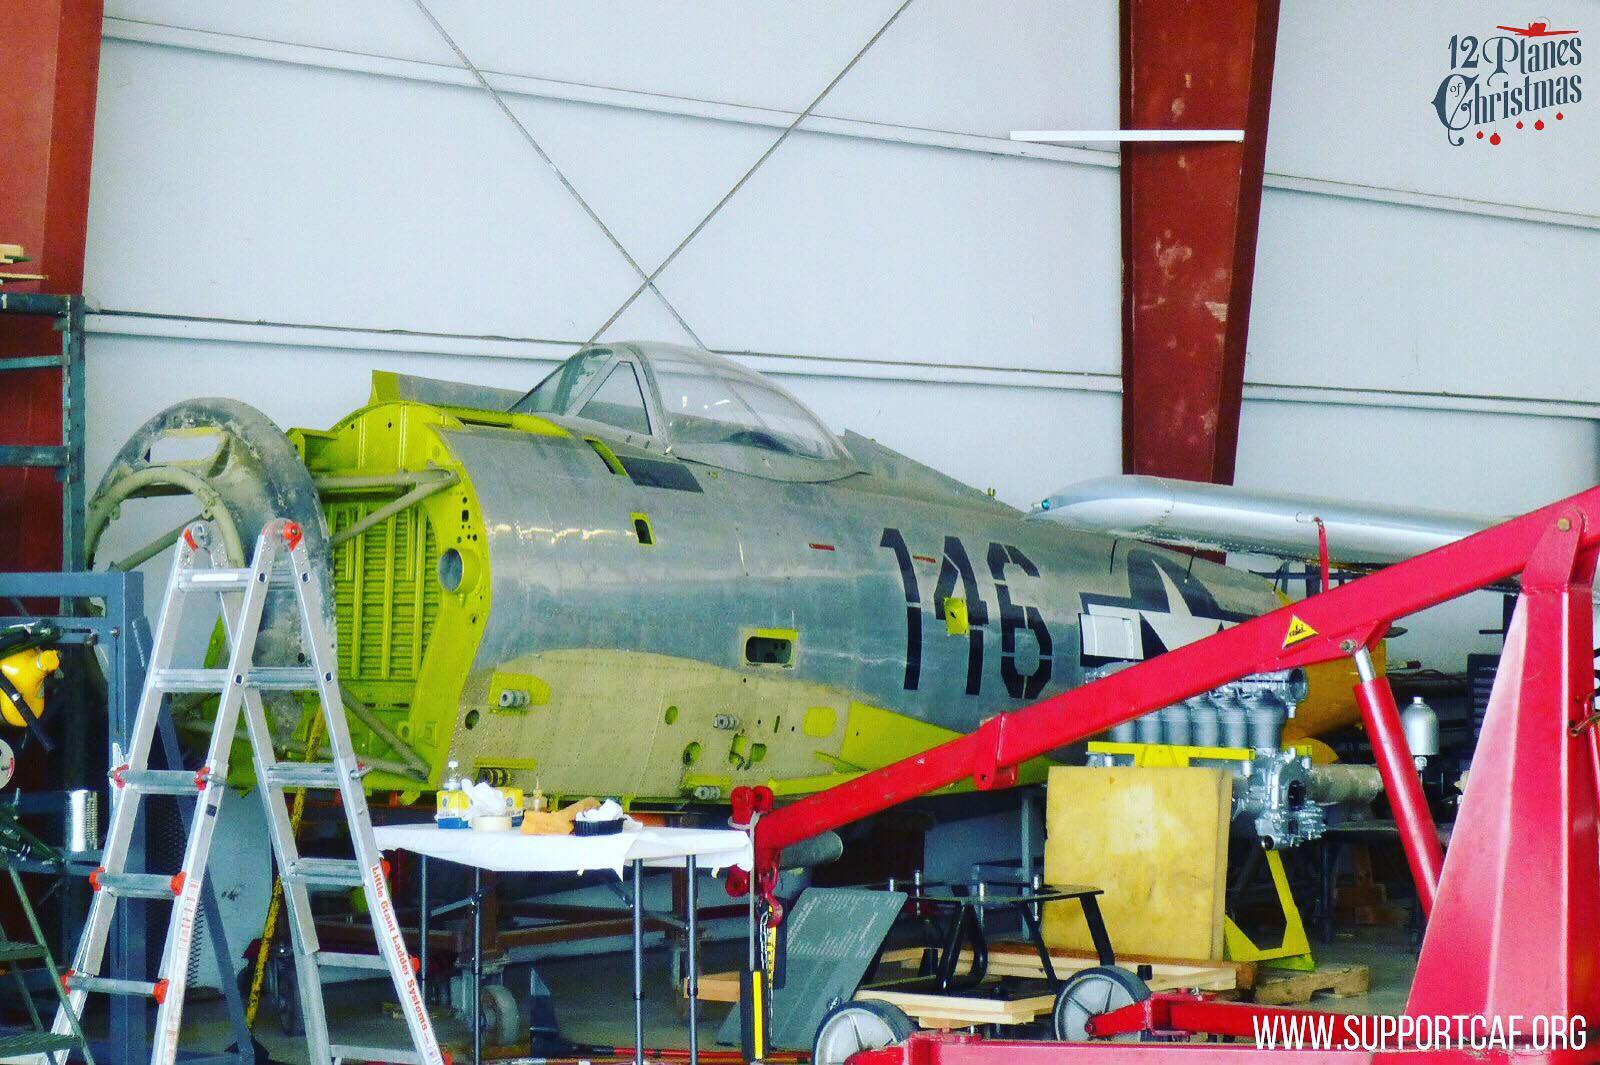 The CAF's F-47N during restoration. (photo via CAF)